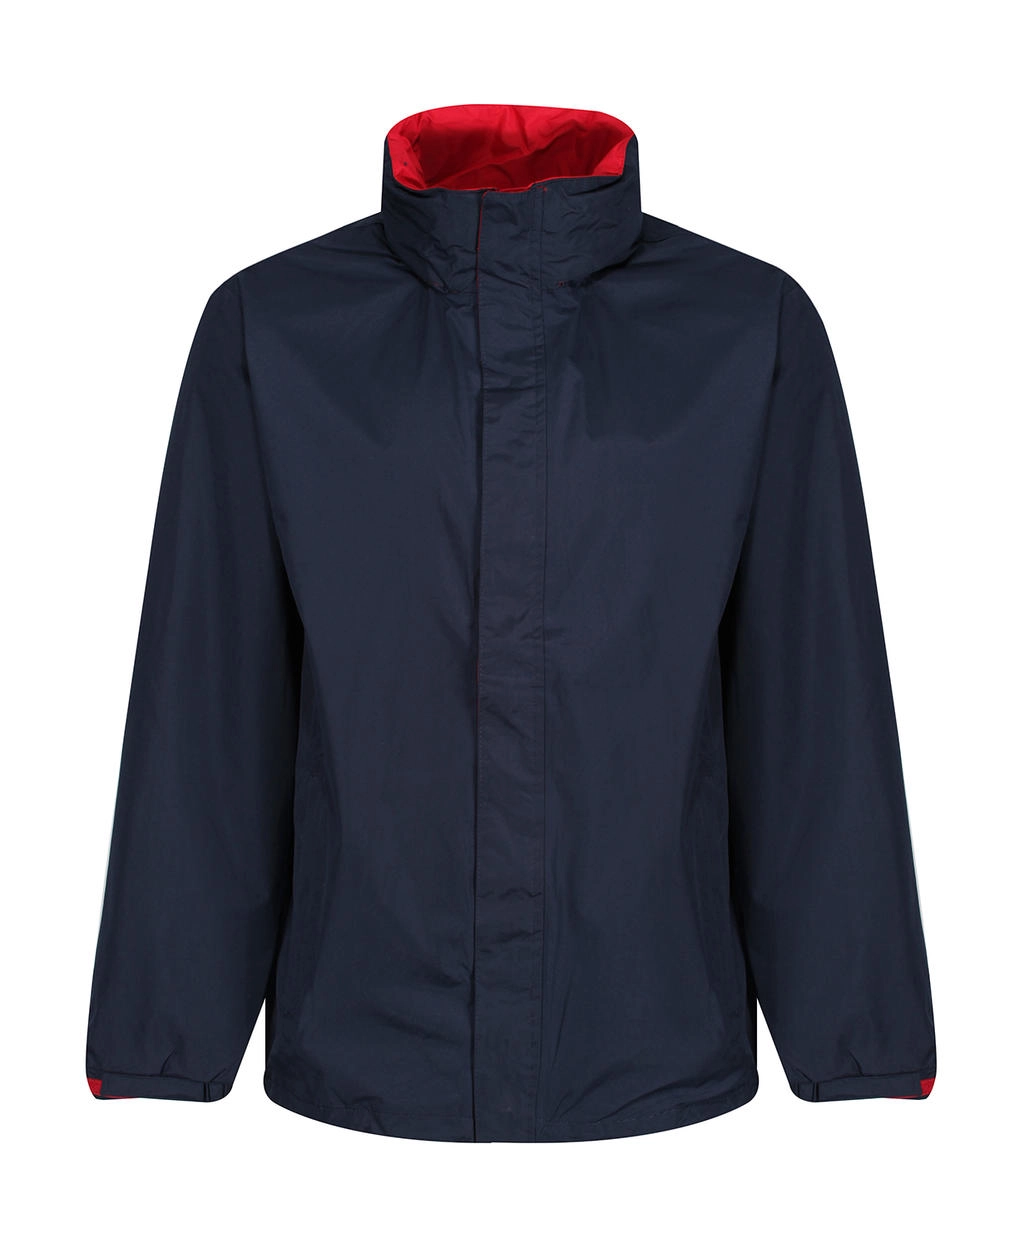 Ardmore Jacket zum Besticken und Bedrucken in der Farbe Navy/Classic Red mit Ihren Logo, Schriftzug oder Motiv.